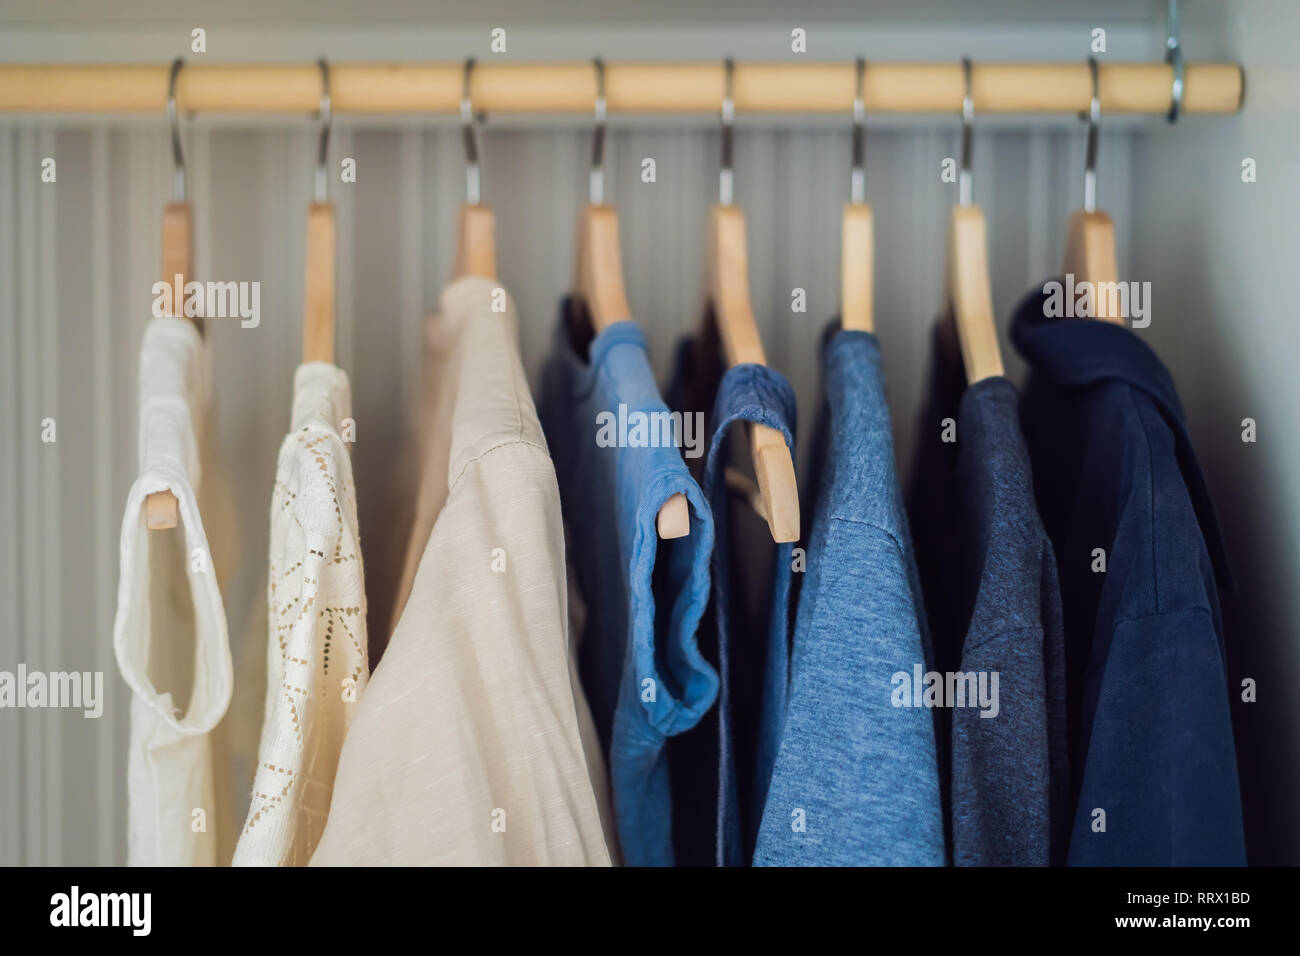 Kleidung auf Kleiderbügel im Schrank Farbverlauf von Weiß bis Dunkelblau  Stockfotografie - Alamy